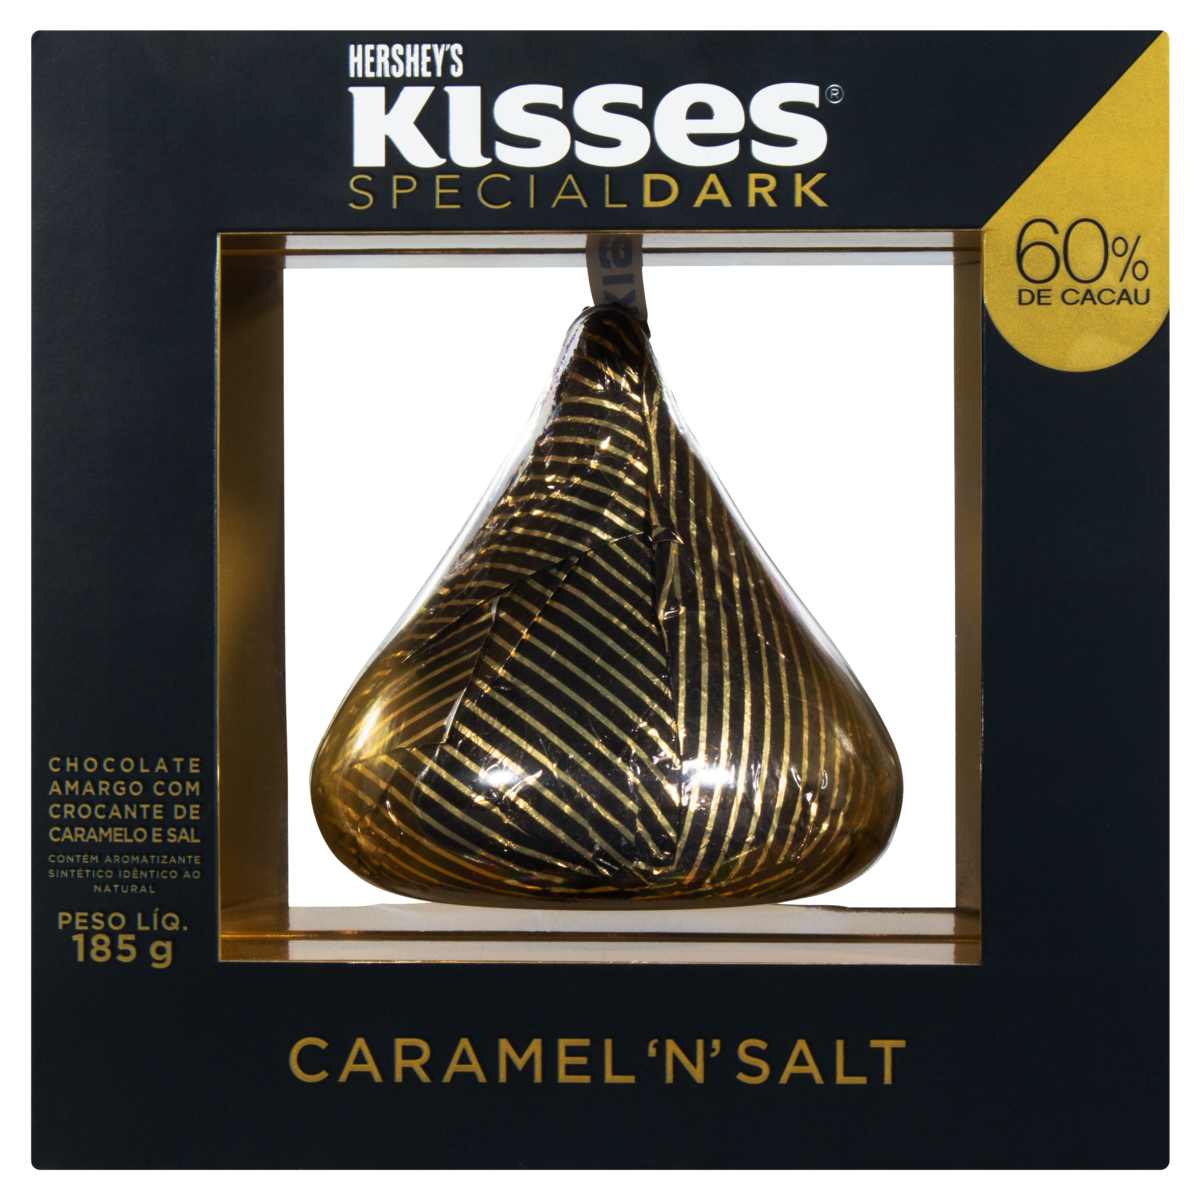 7898292889730 - CHOCOLATE AMARGO 60% DE CACAU CARAMEL N SALT HERSHEYS KISSES SPECIAL DARK CAIXA 185G